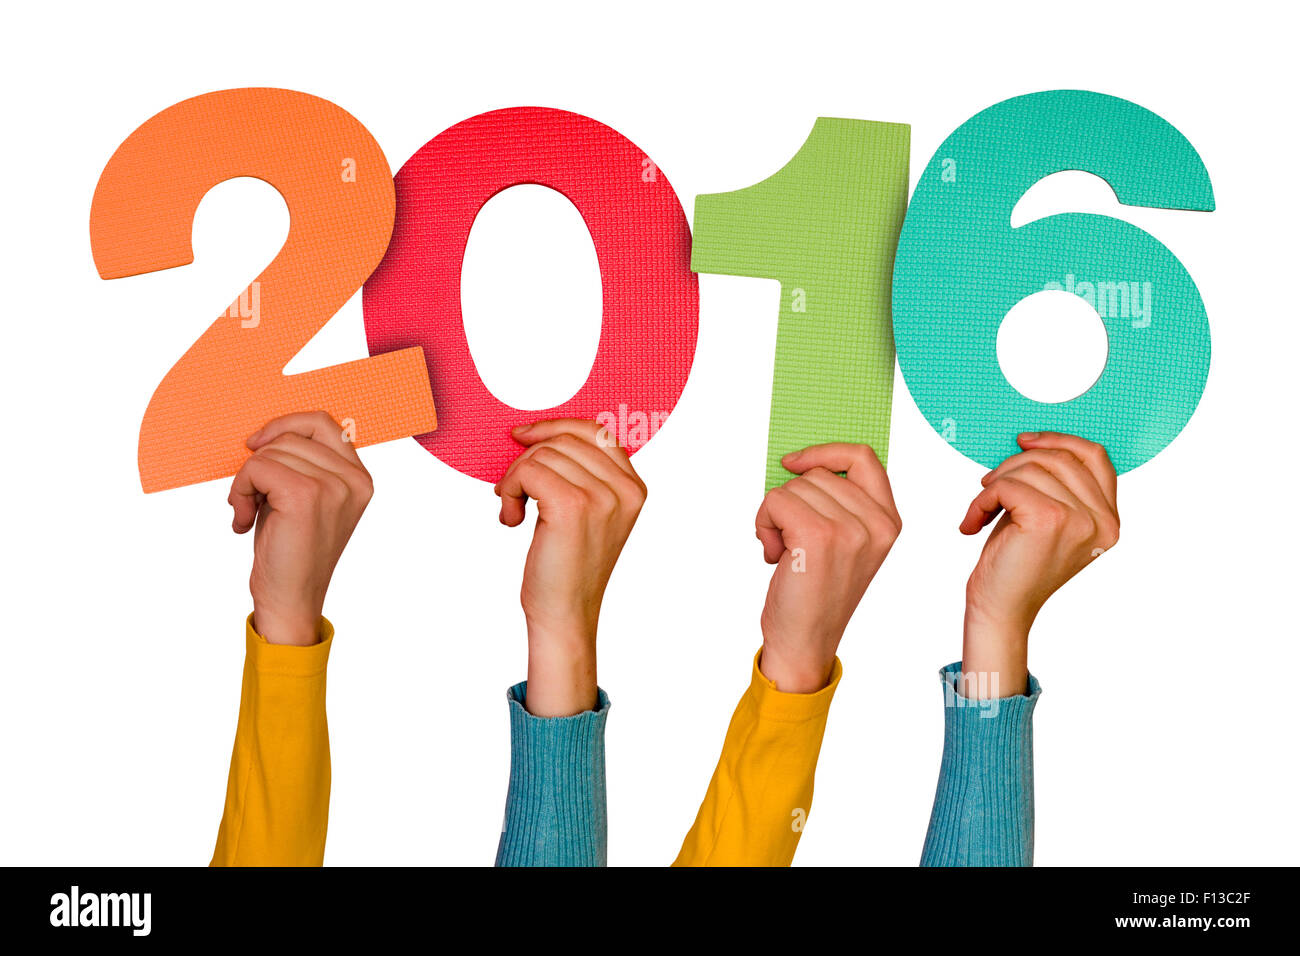 Les mains avec numéros de couleur indique l'année 2016. Isolé sur fond blanc Banque D'Images